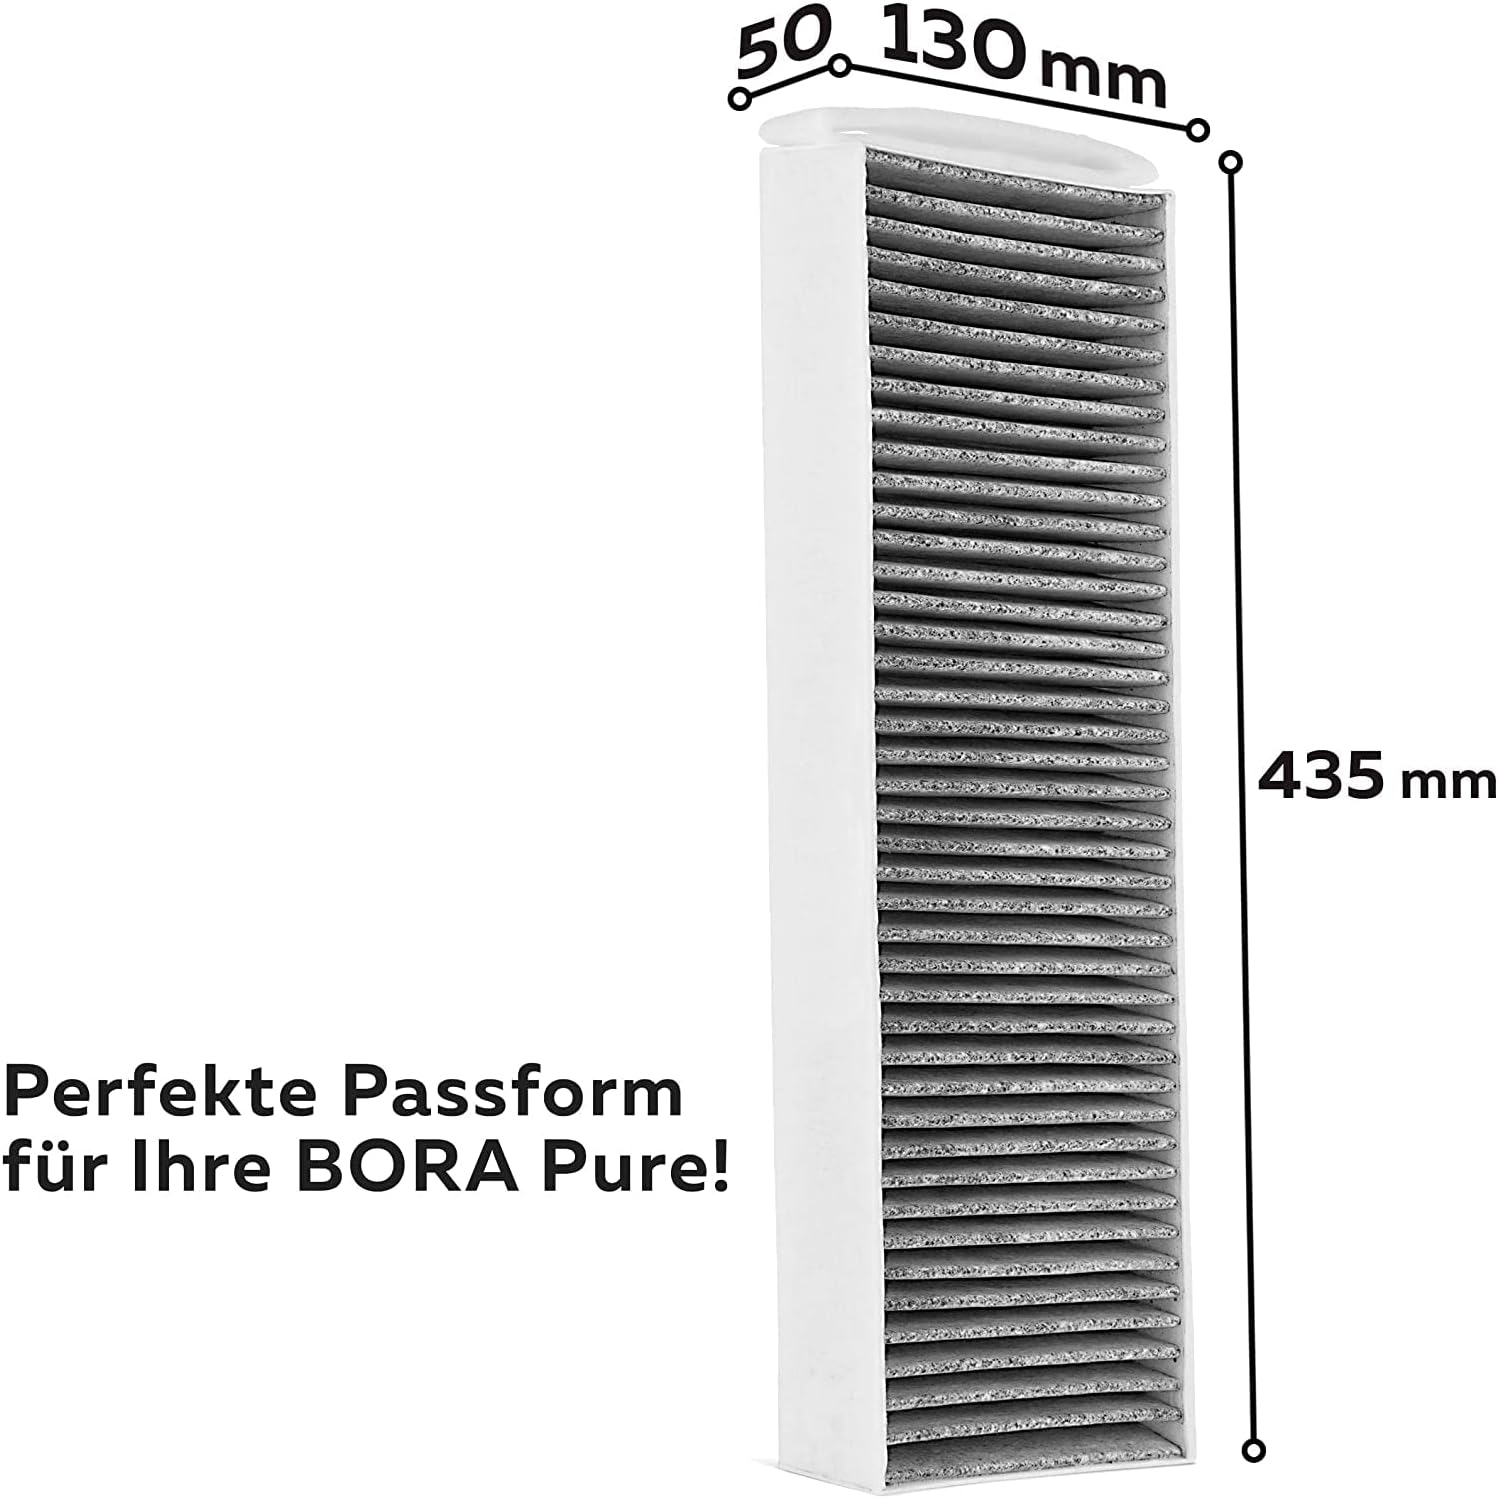 Aktivkohlefilter-Set (2 Filter) für Bora Pure Puakf, für Ihr Umluftkochfeld PURU oder PUXU - 2er Pack